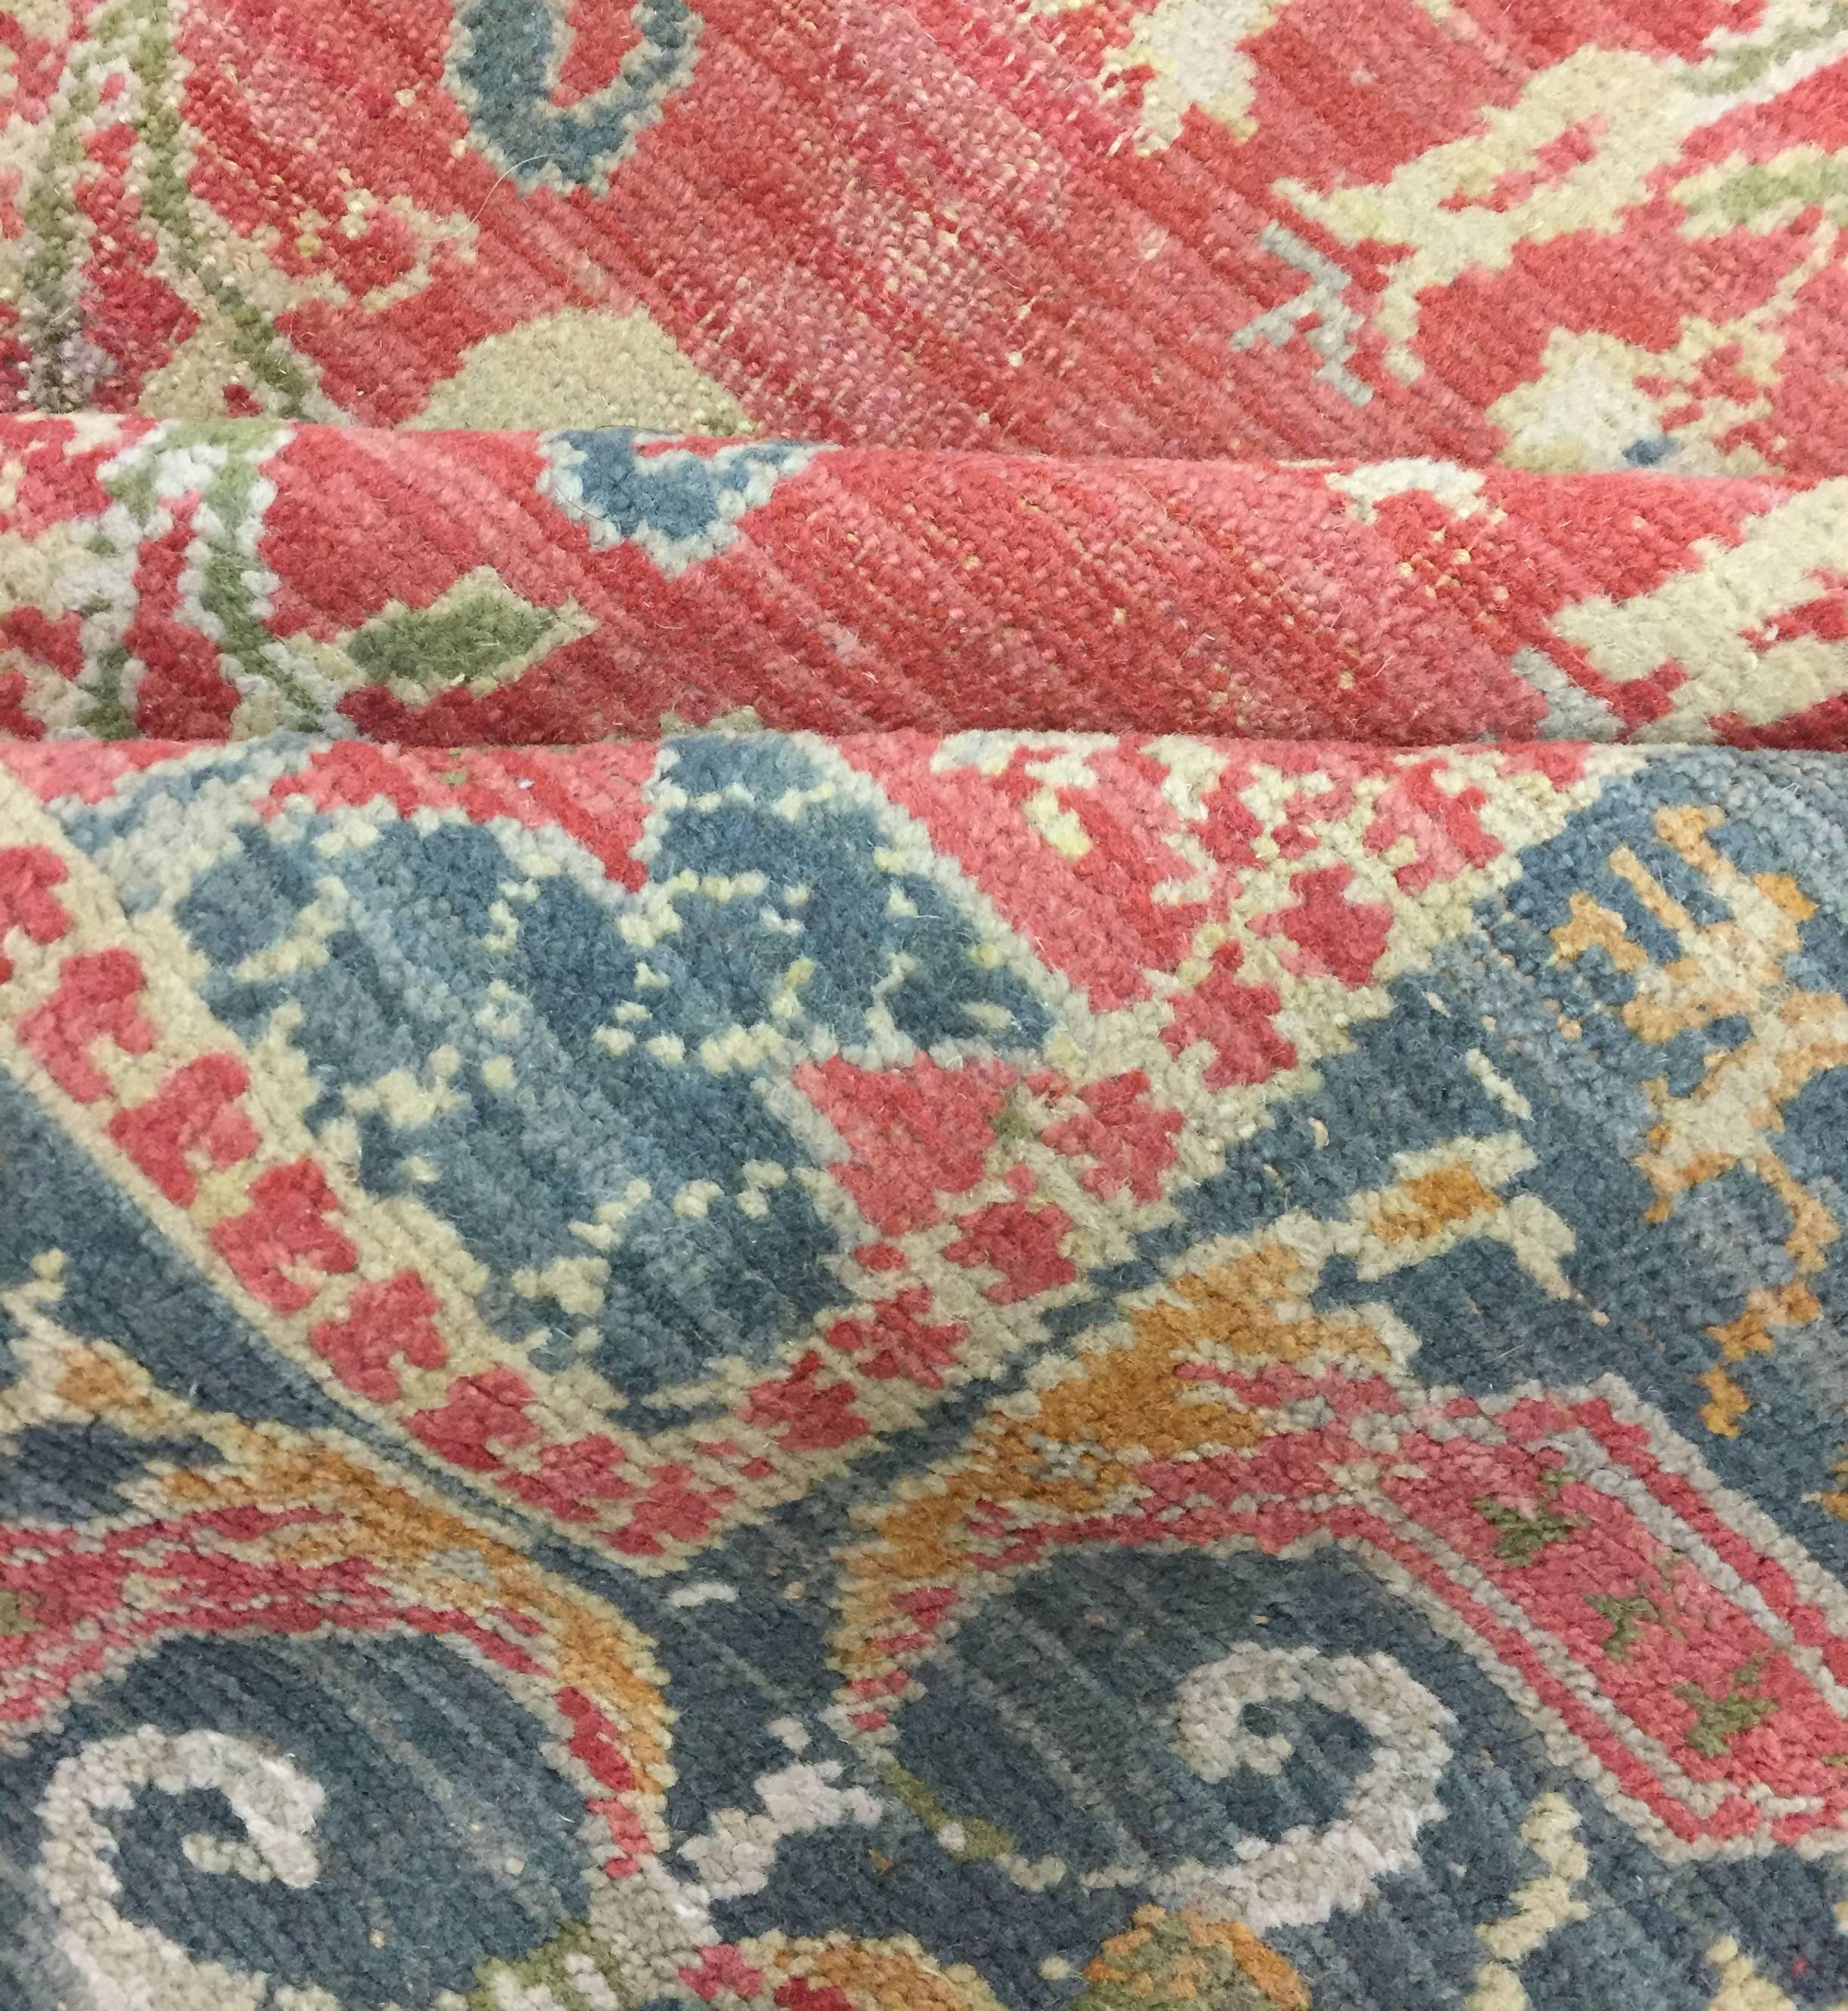 Vintage Spanisch Teppich, um 1940 5' x 7'4. Man denkt nicht an Spanien und Teppiche, aber das Weben ist seit Hunderten von Jahren ein Teil der spanischen Kultur, die bis in die Zeit zurückreicht, als Spanien Teil der islamischen Welt war. Dieser